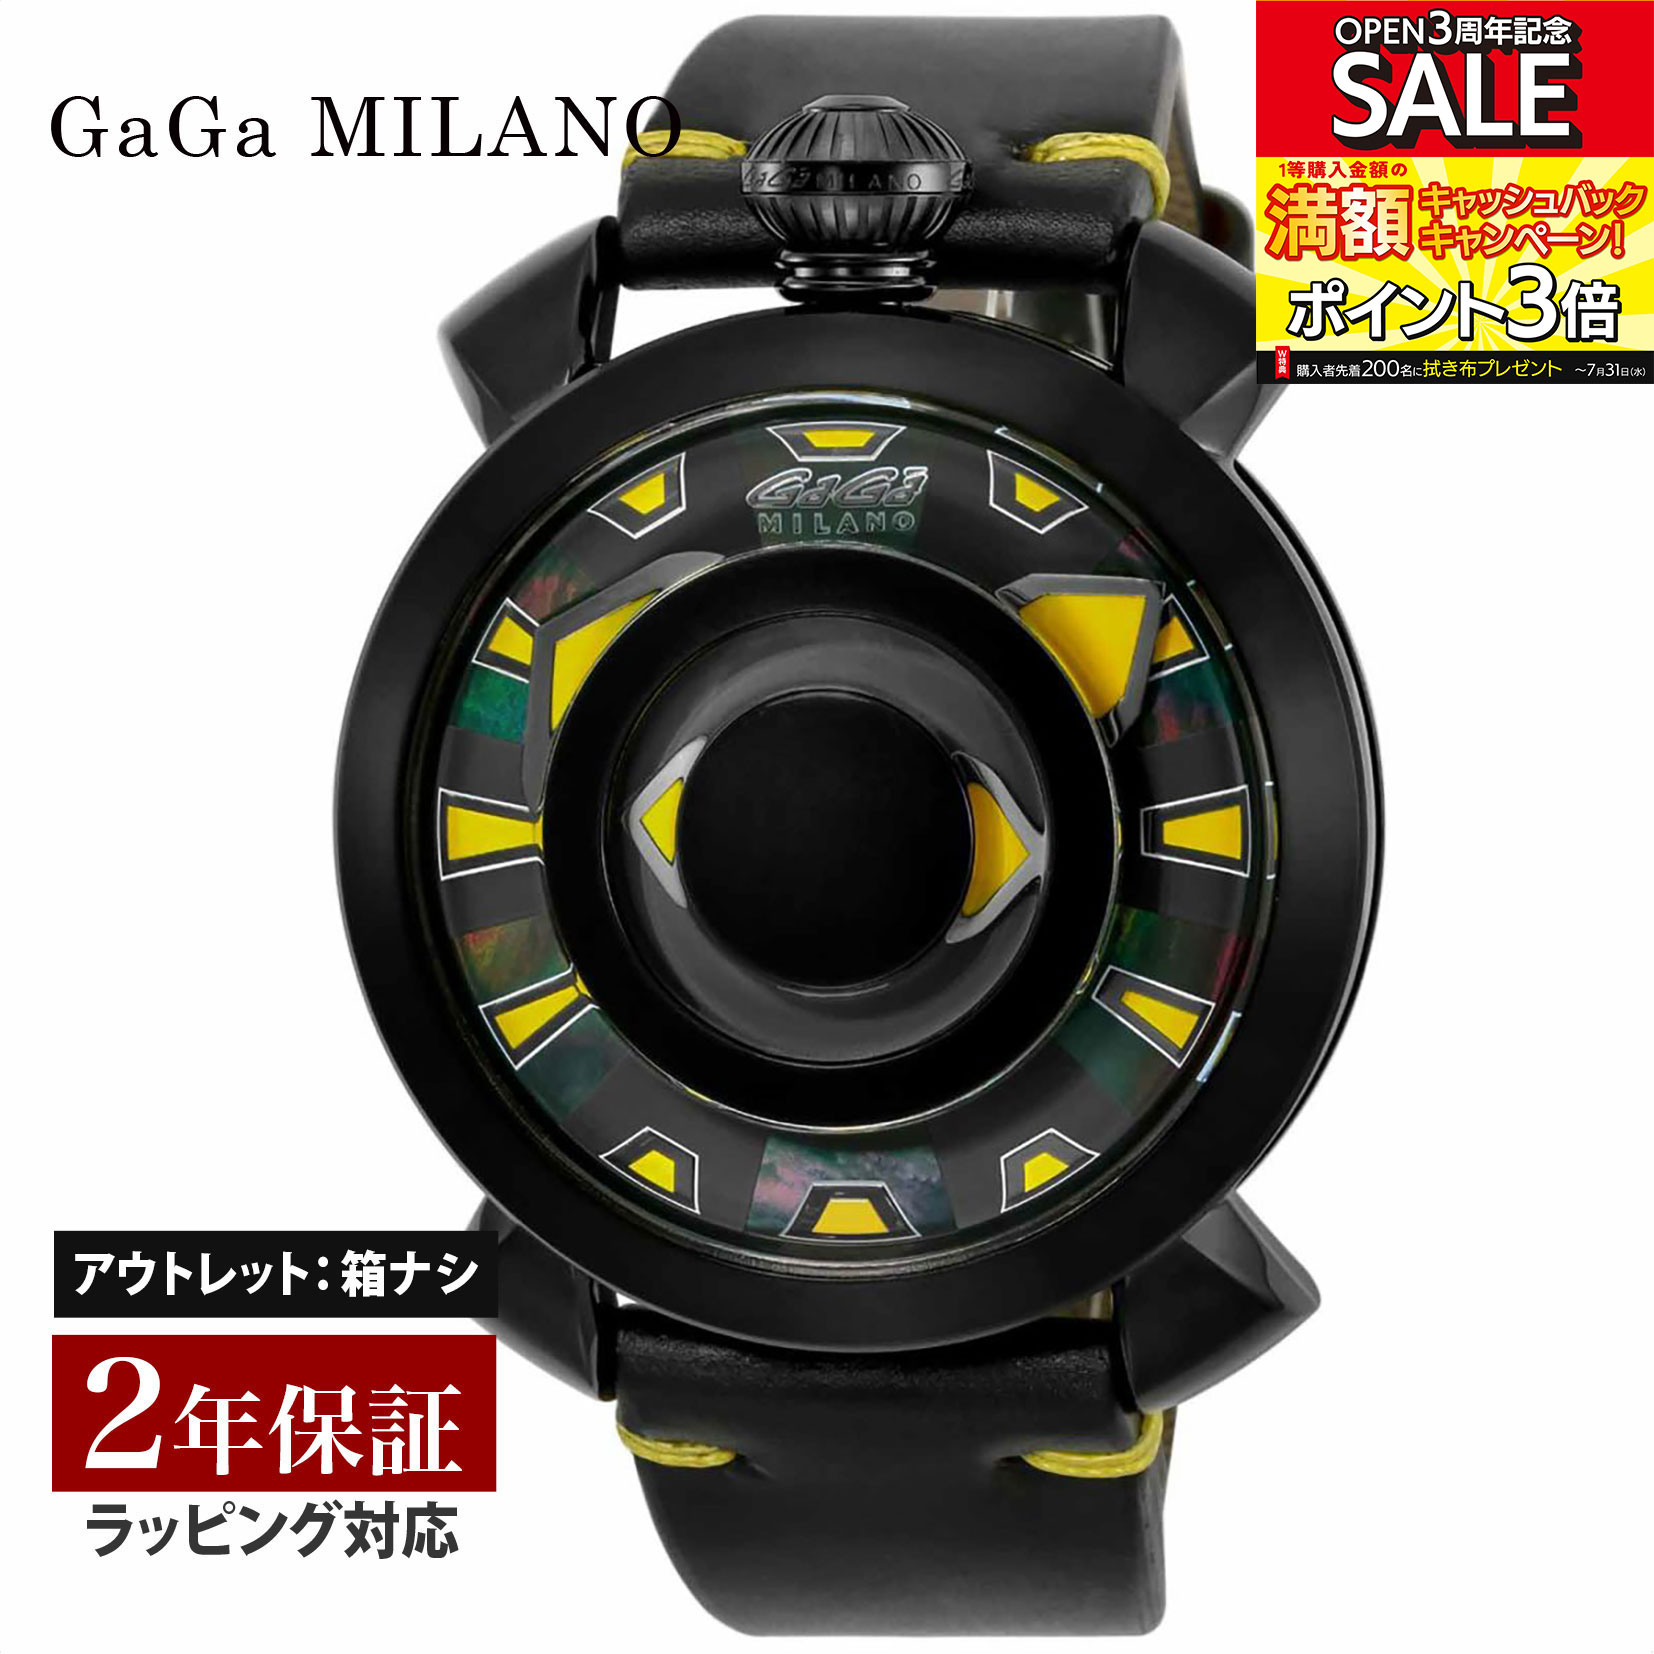 ガガ ミラノ 腕時計（メンズ） 【OUTLET】 ガガミラノ GaGaMILANO メンズ 時計 MANUALE 48mm 自動巻 マルチカラー 9092.02 時計 腕時計 高級腕時計 ブランド 【展示品】